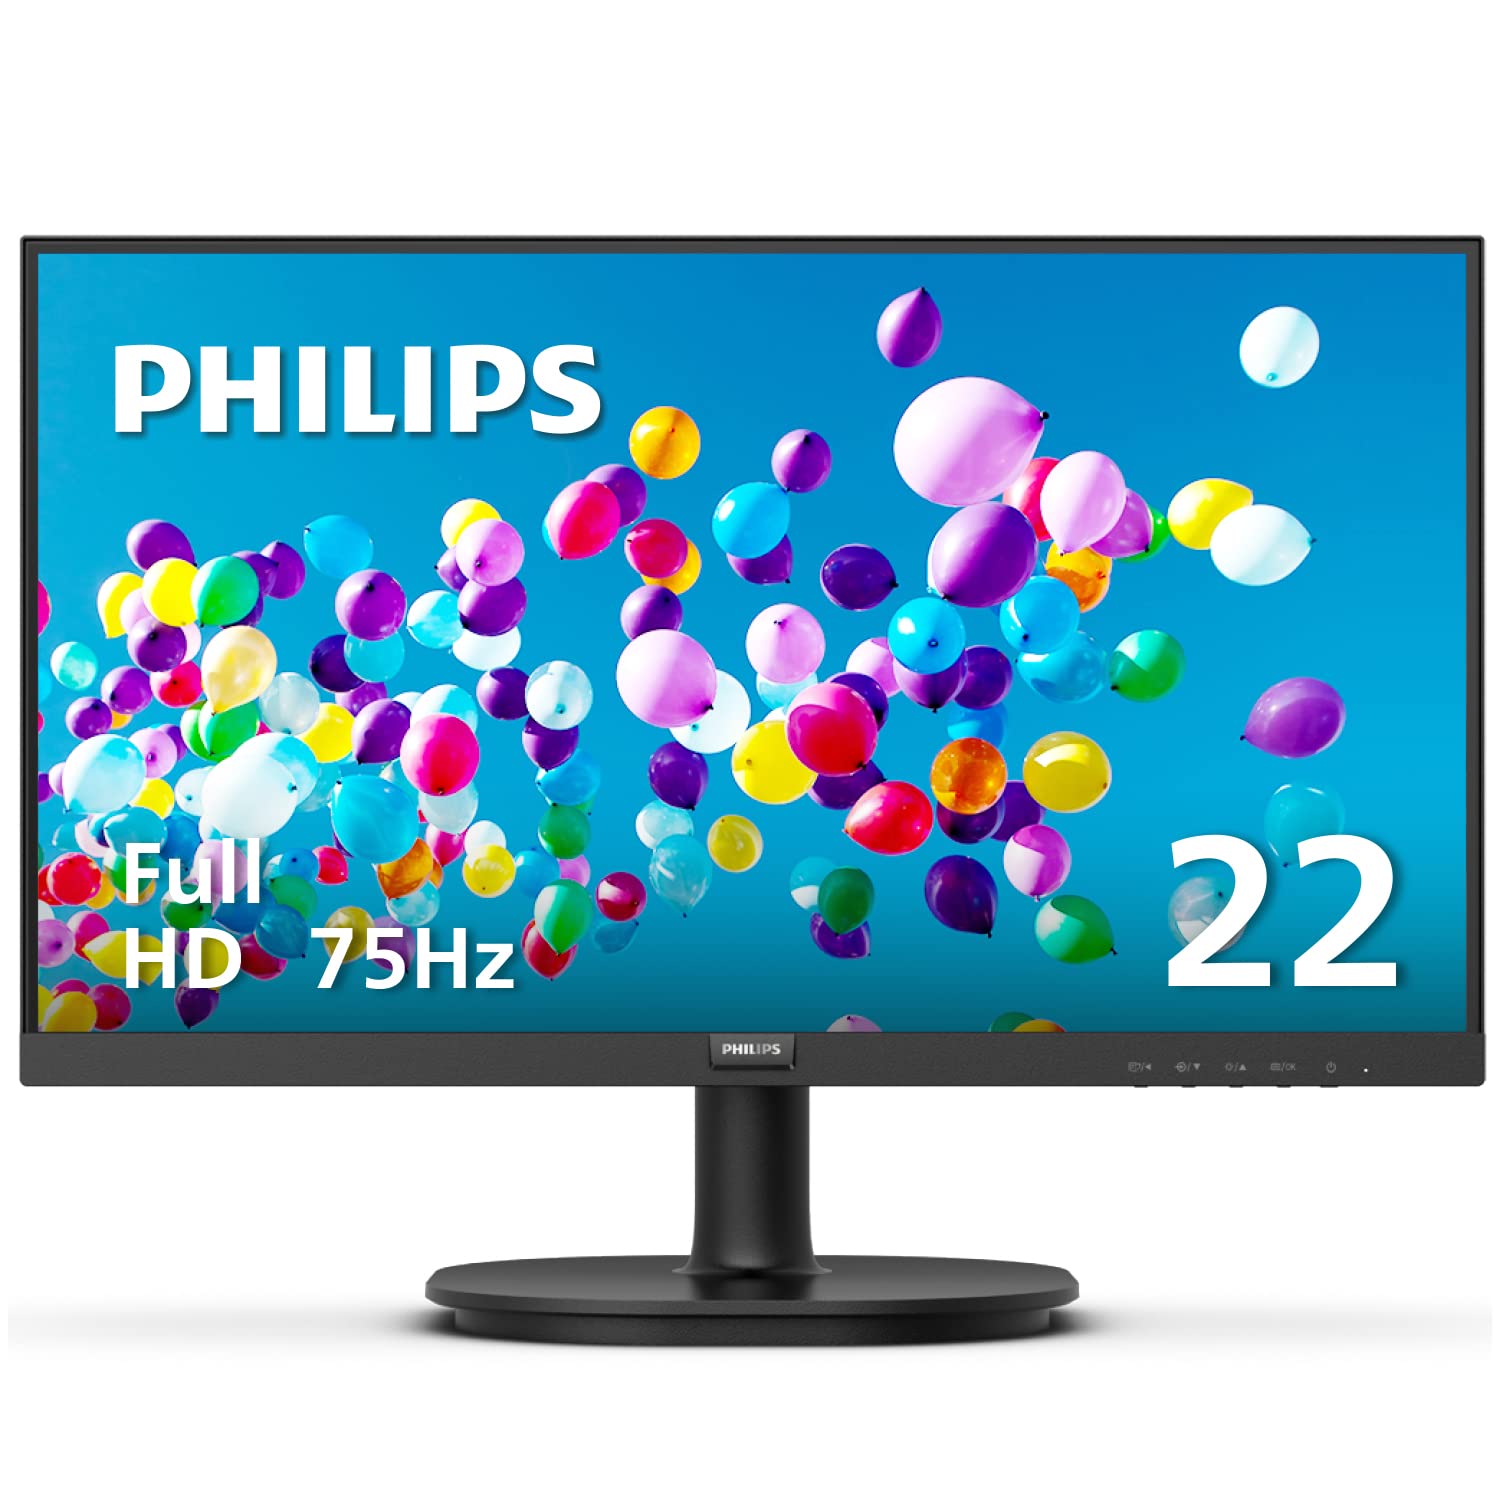 Philips Computer Monitors Philips puro 2